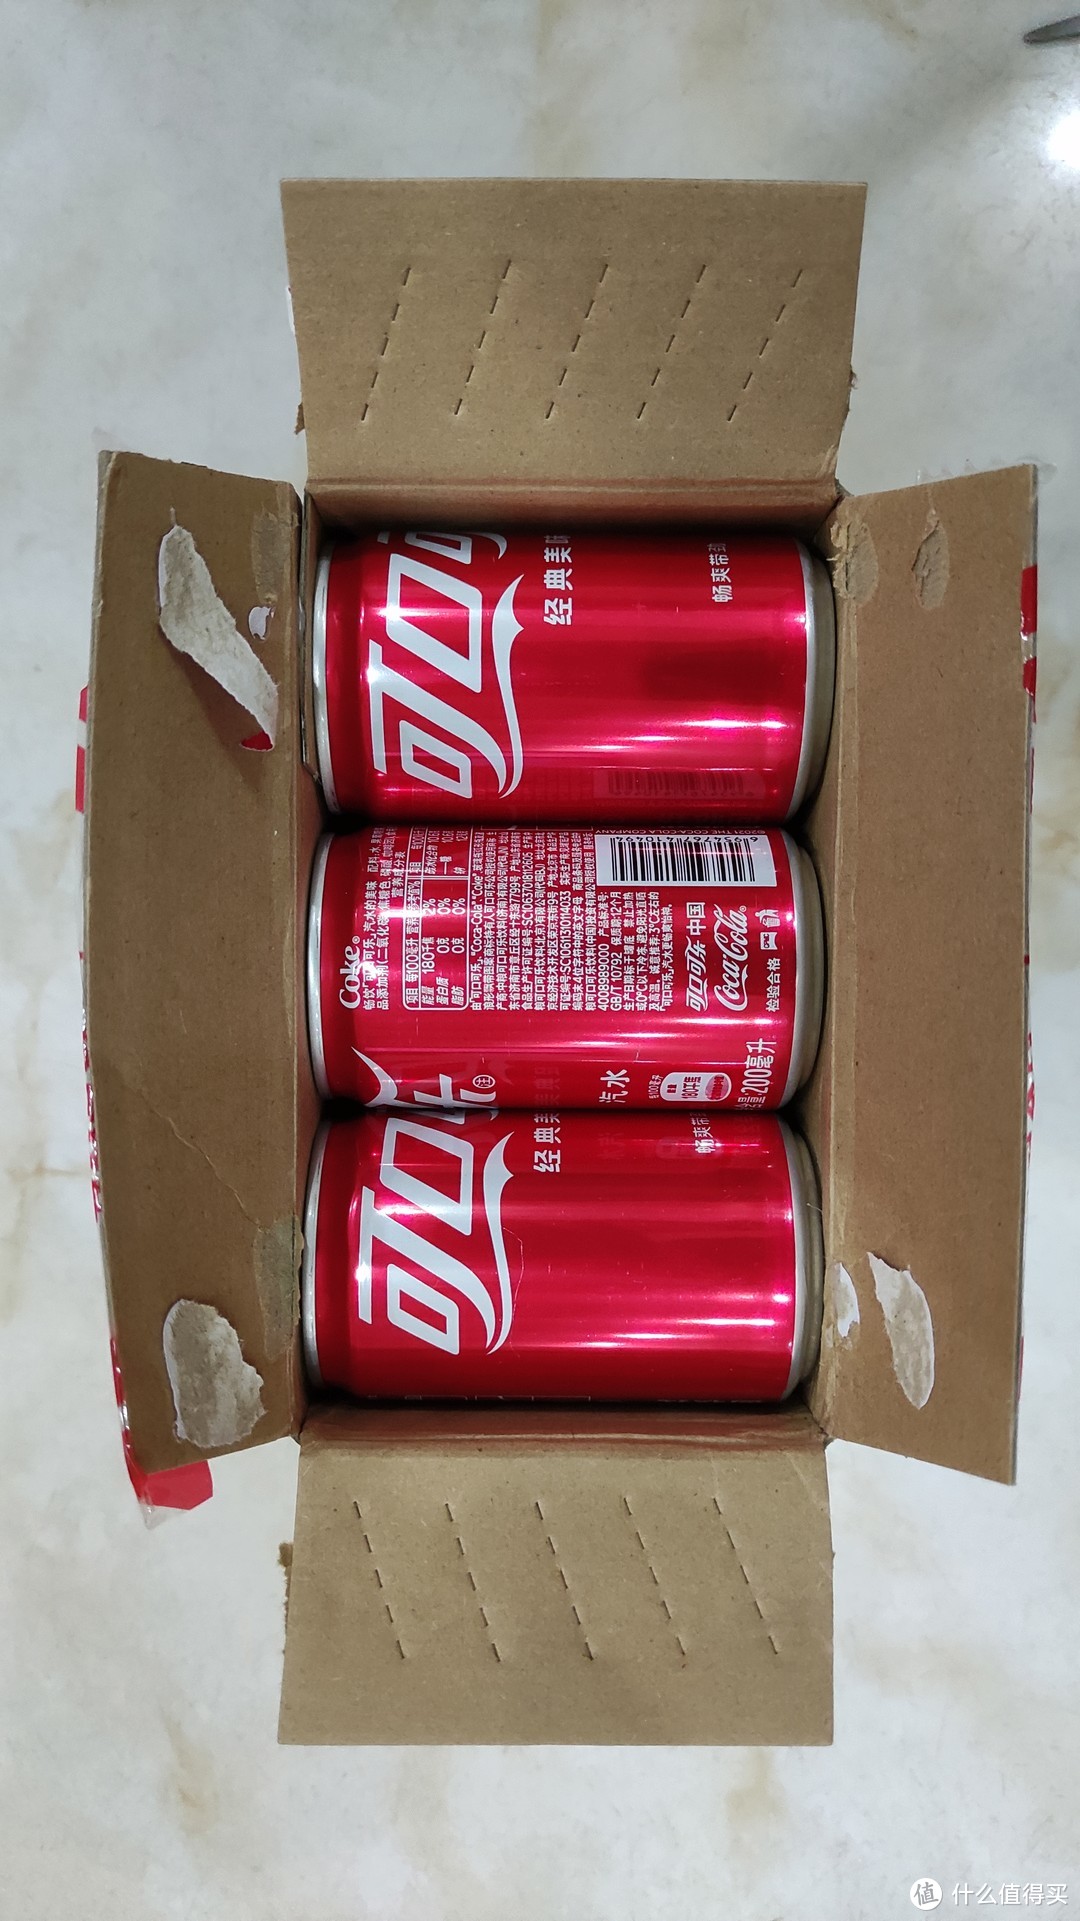 日常开箱晒单 篇一百一十三:mini罐装200ml可口可乐开箱体验